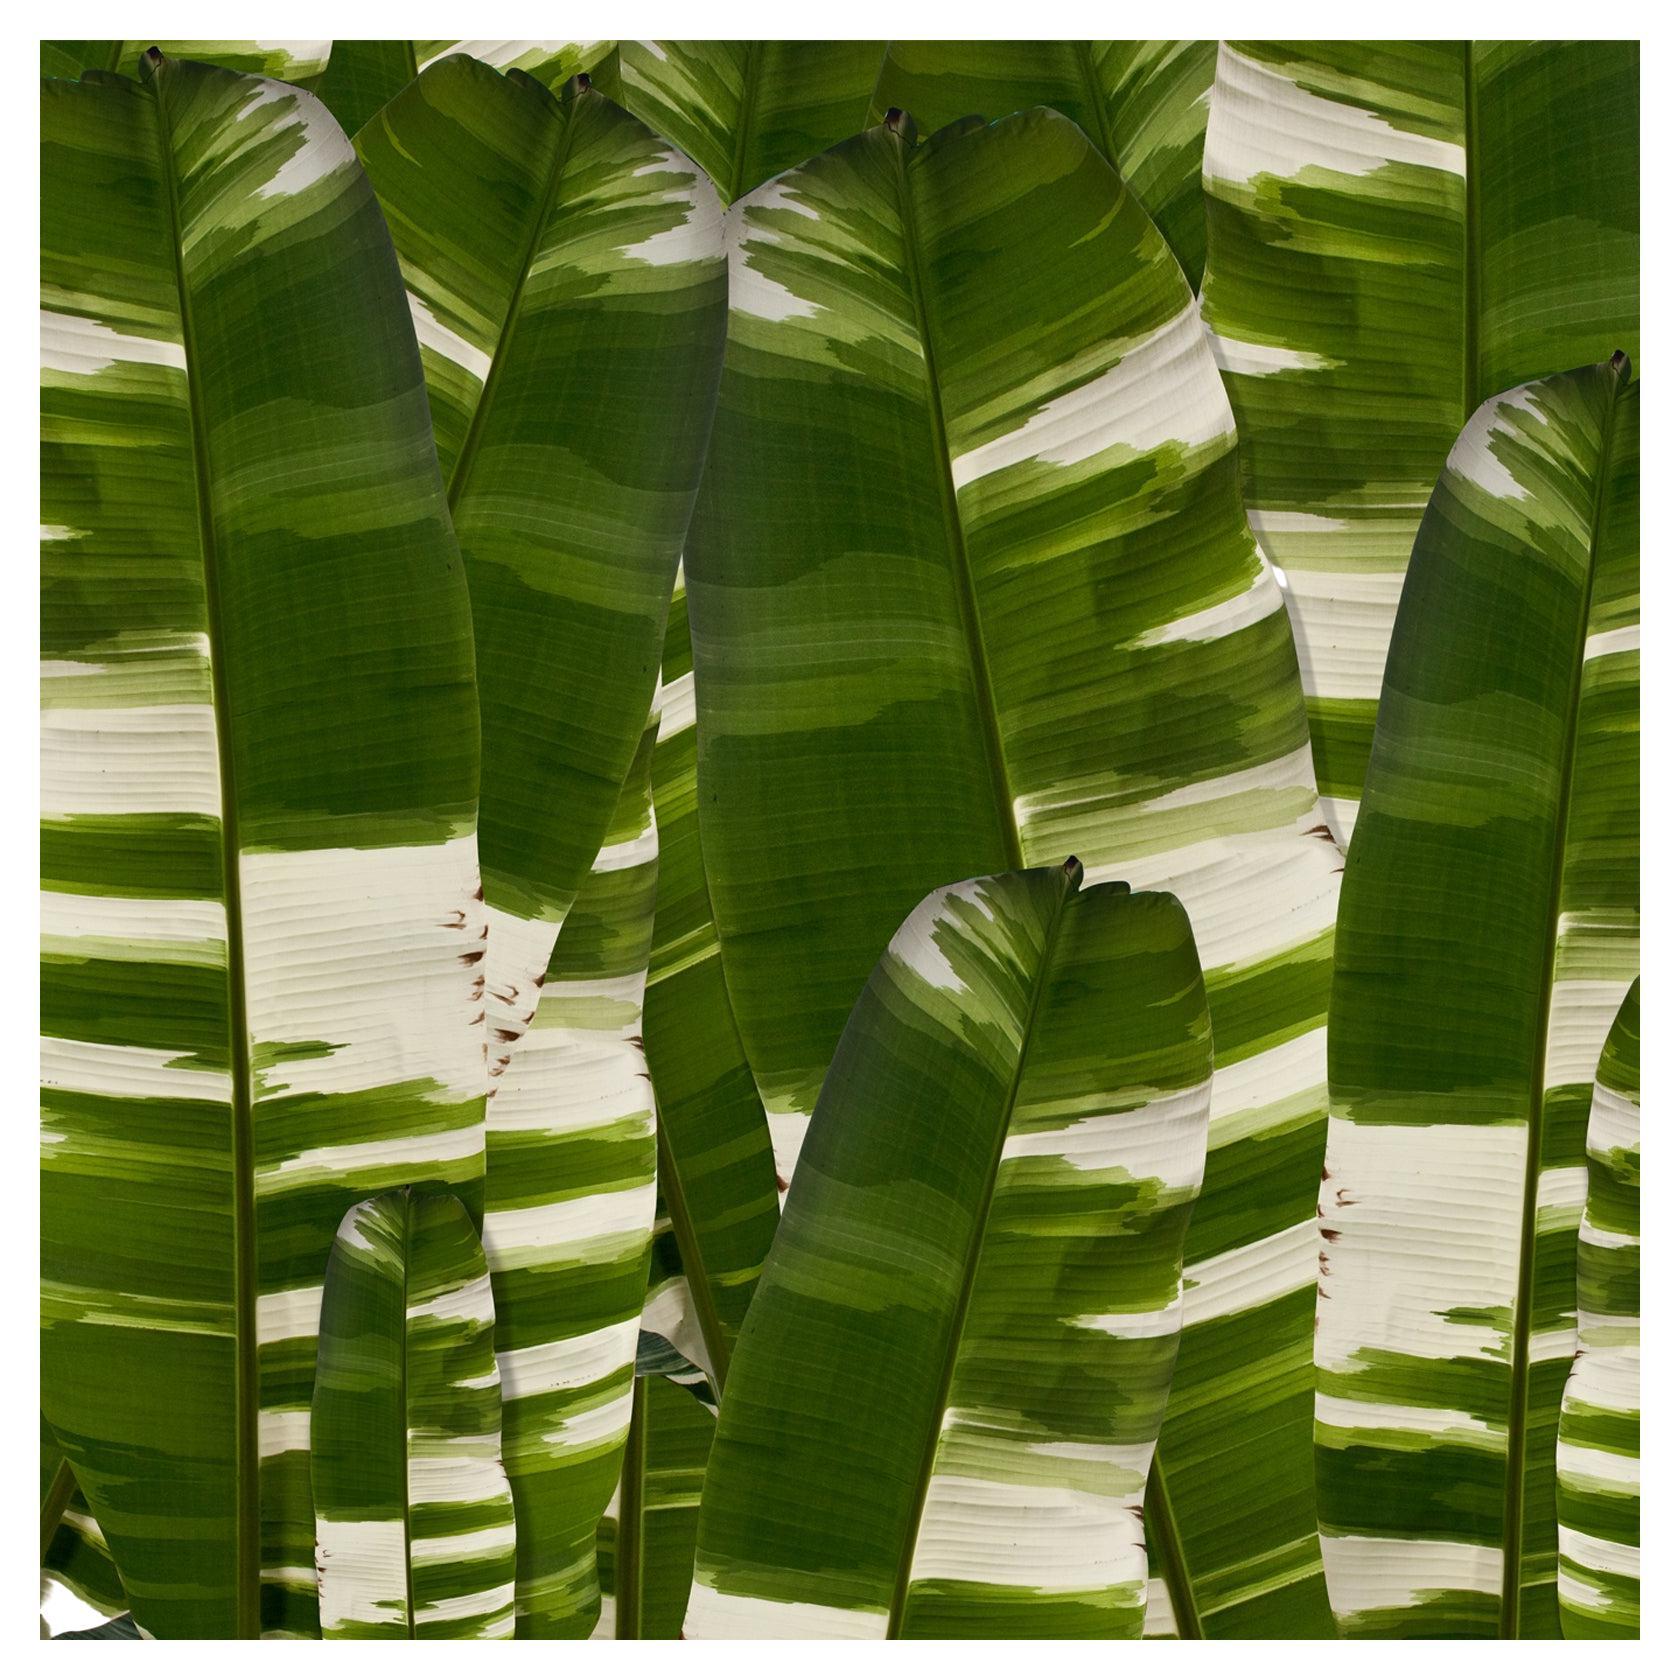 EDGE Kollektionen Vertical Leaf Camo aus unserer Kollektion Tropical Modernism